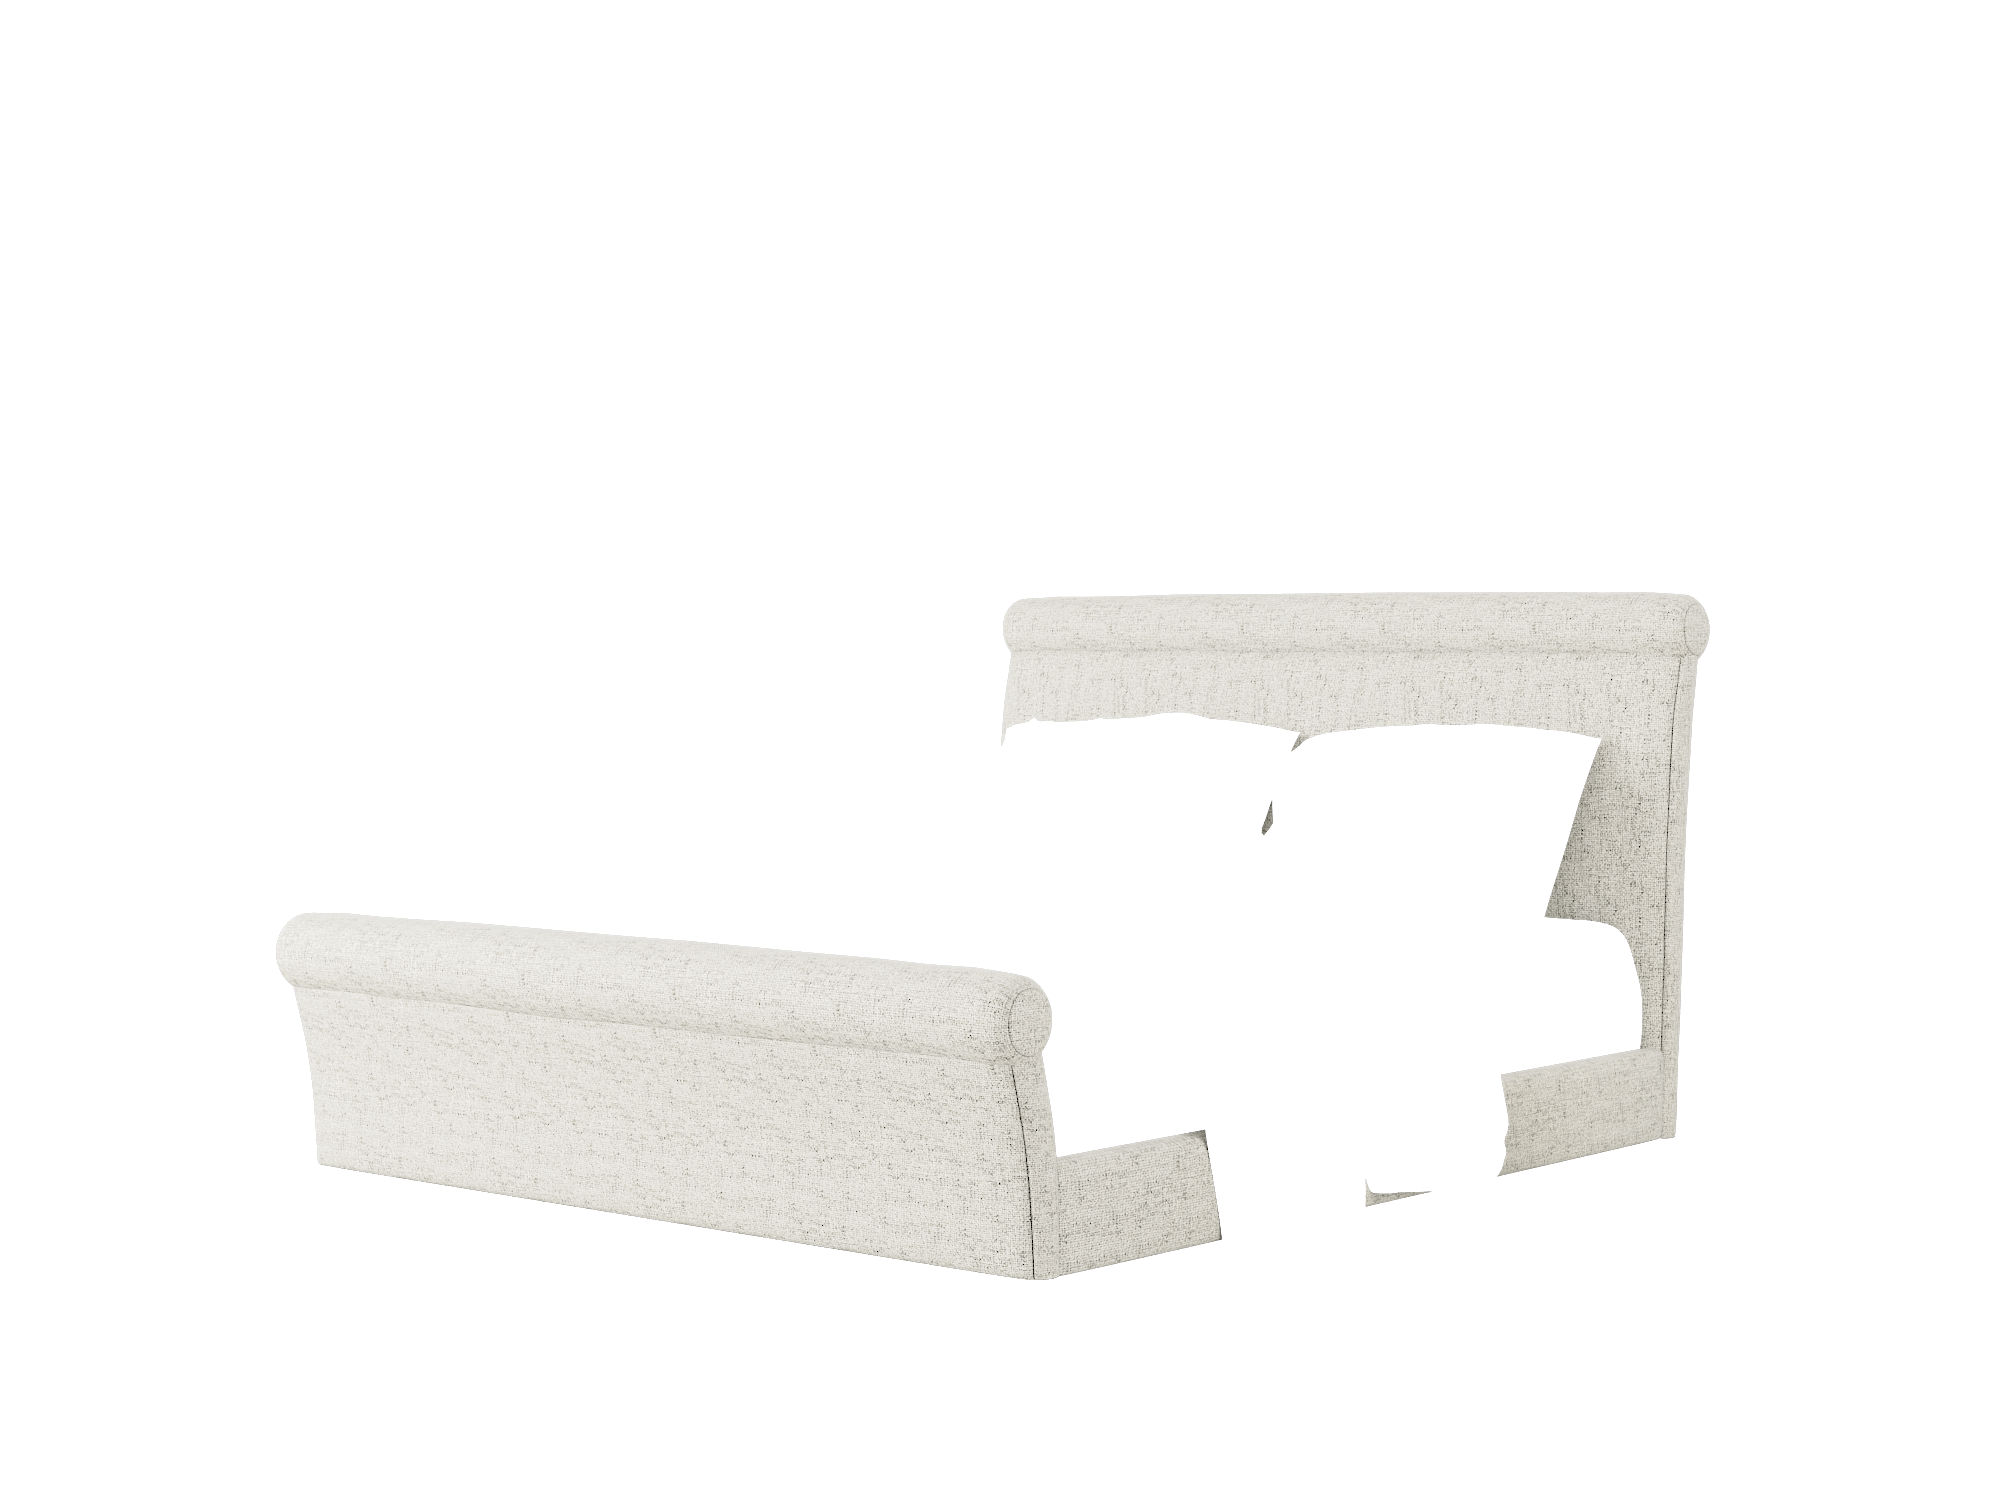 Maja Oceanside Granite Bed King Room Texture